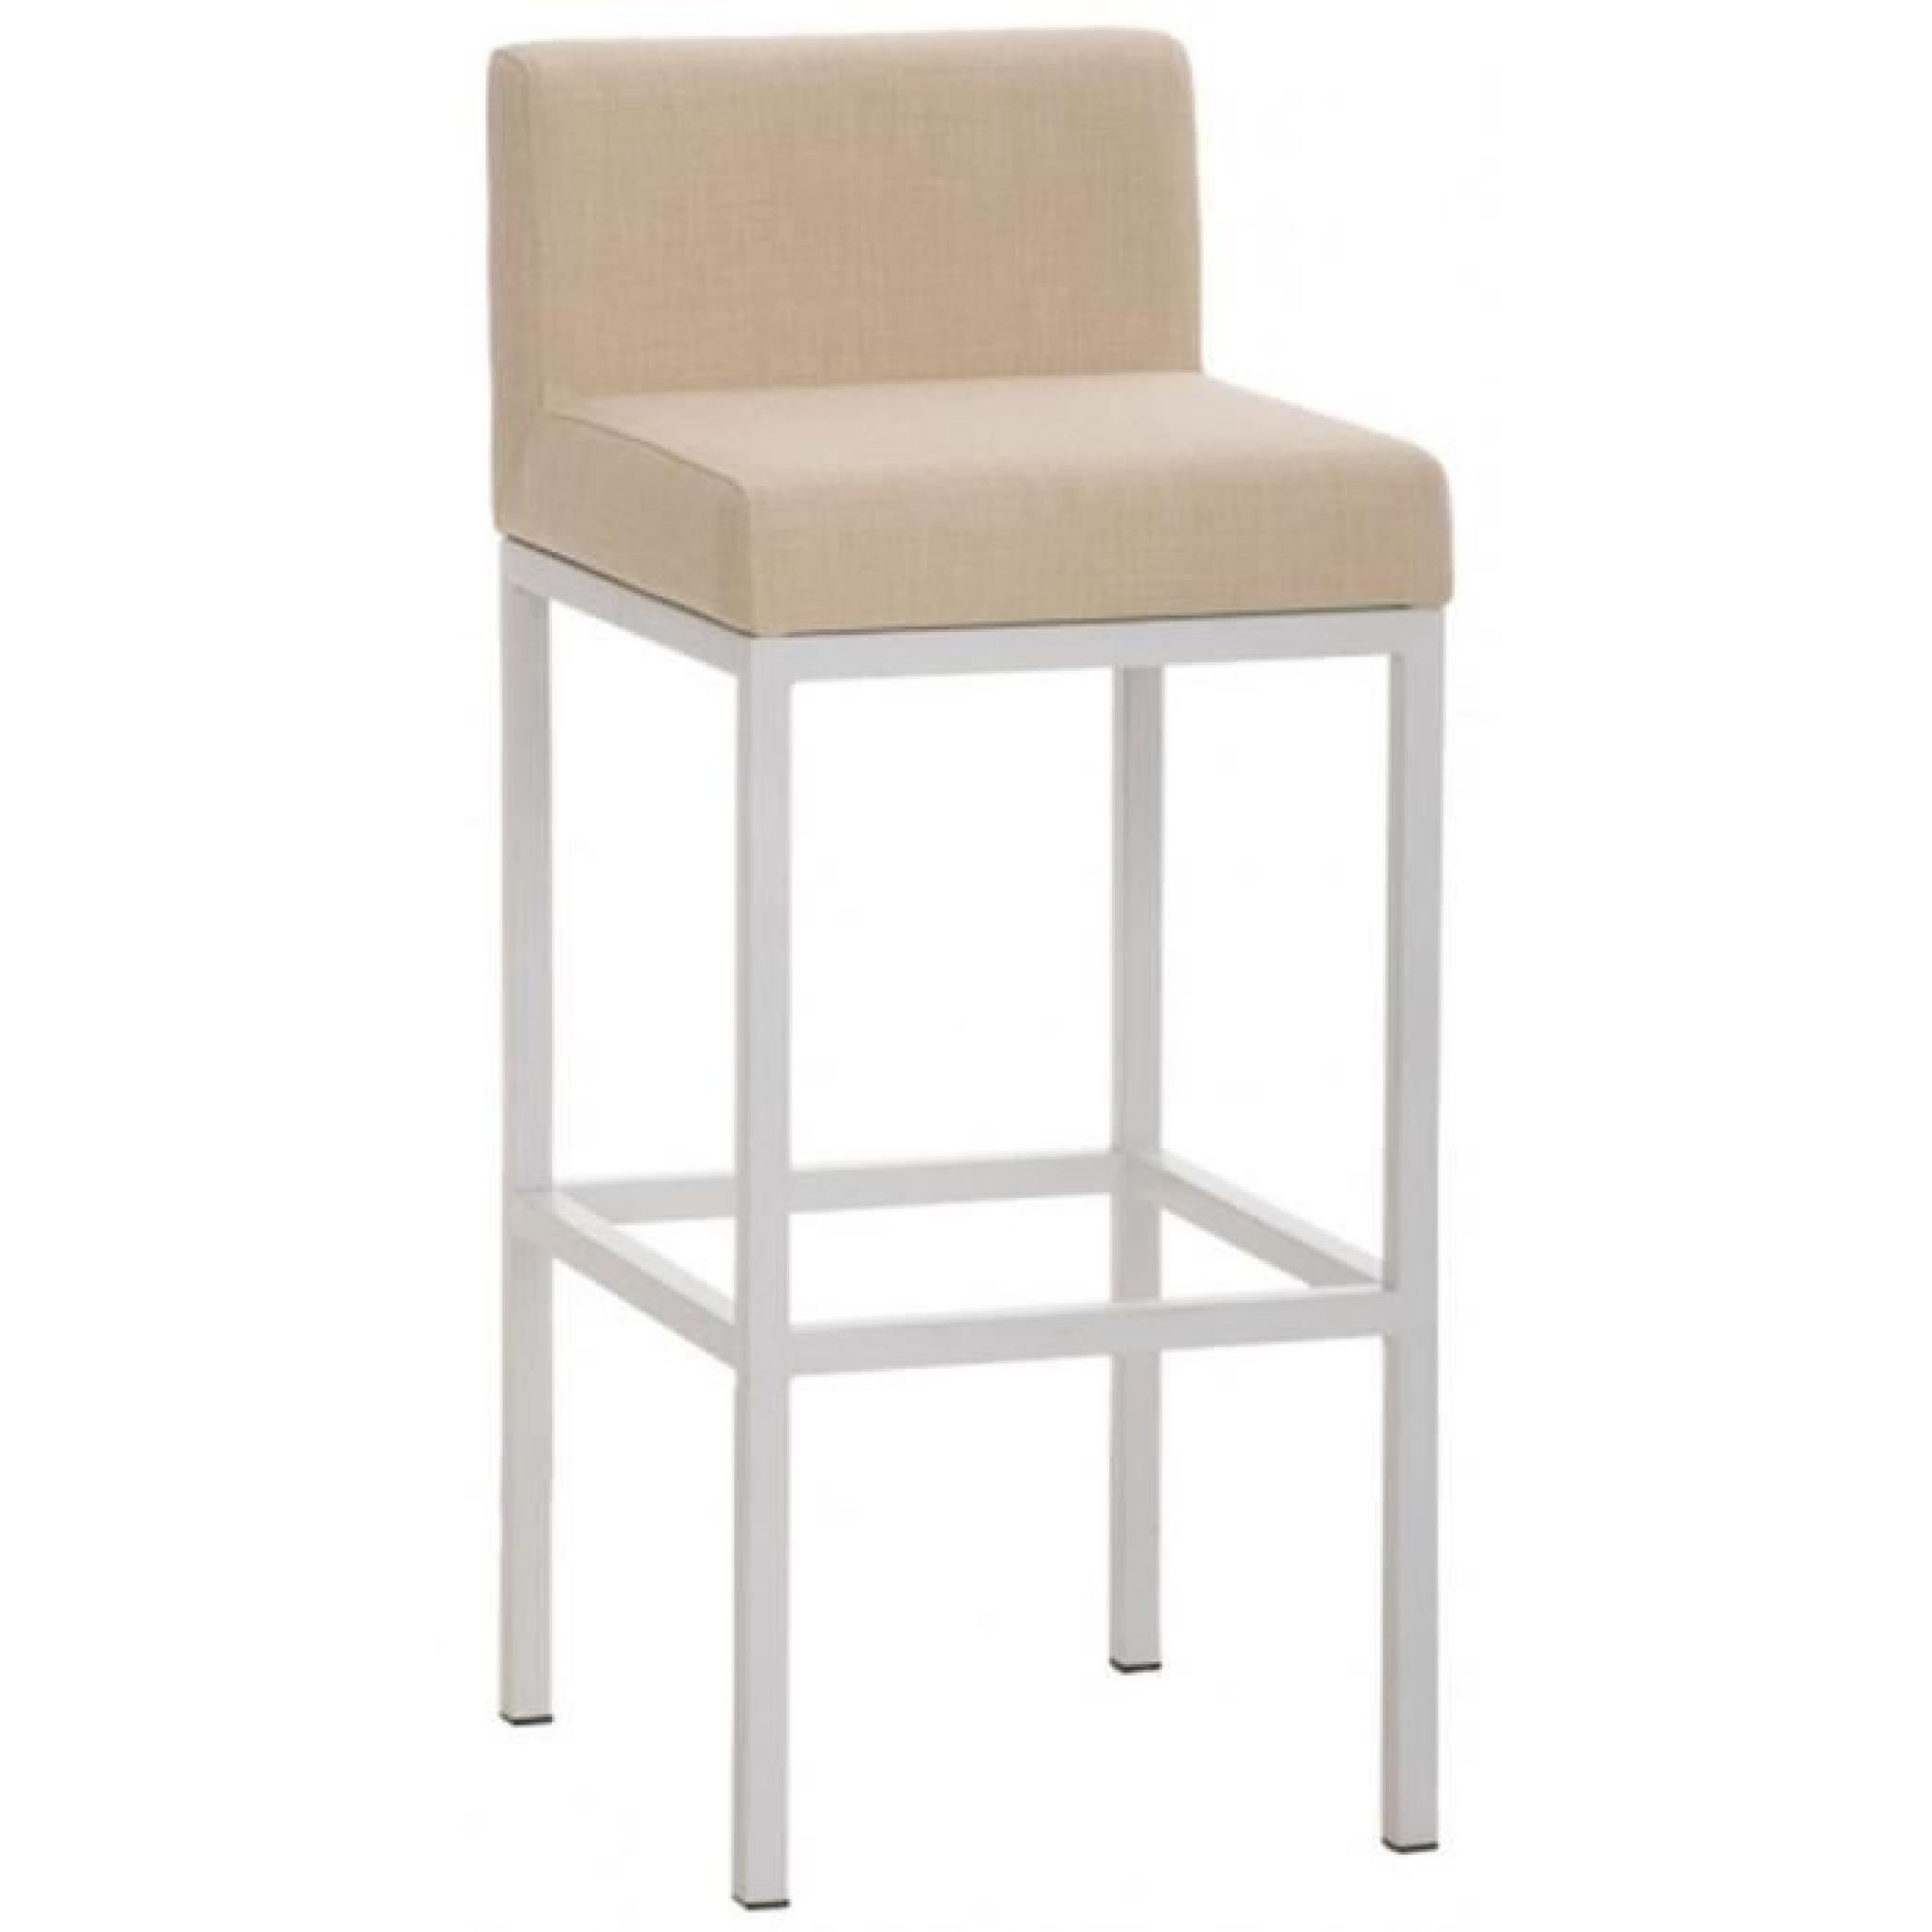 Chaise de bar en métal avec siège en tissu coloris crème, H 96,5 x L 40 x P 44,5 cm